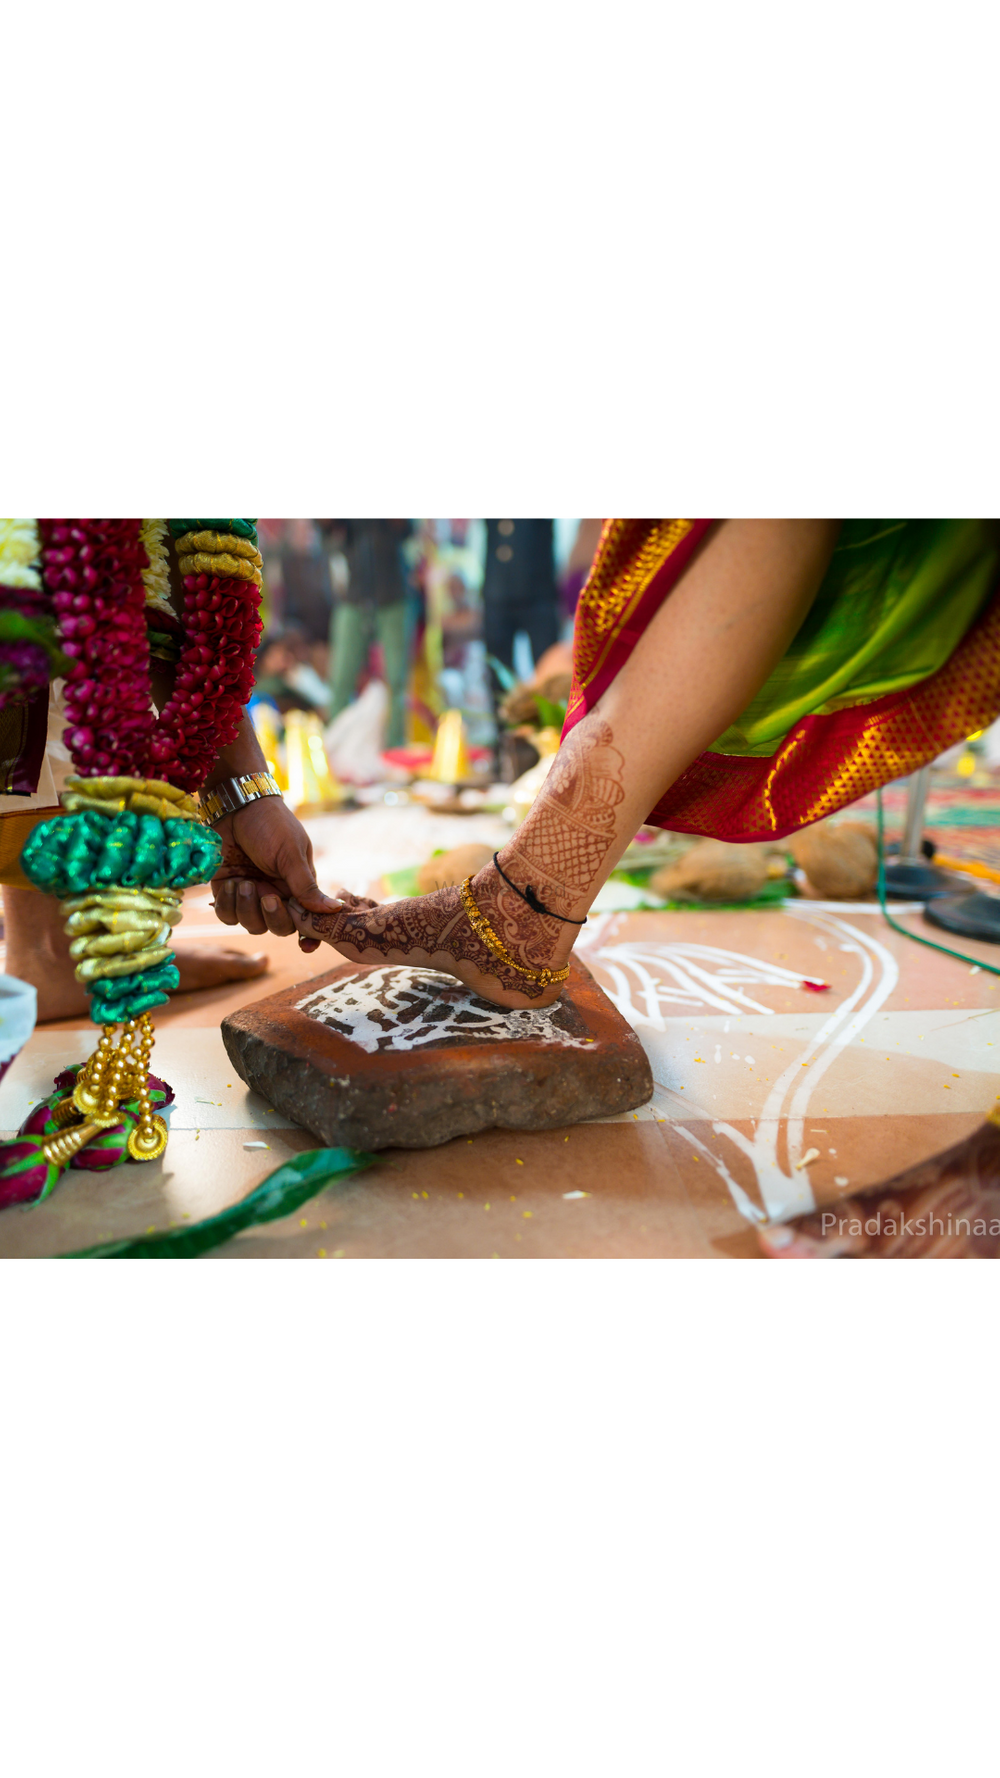 Photo From Tamil Brahmin Wedding | Mumbai | 2020 - By Pradakshinaa